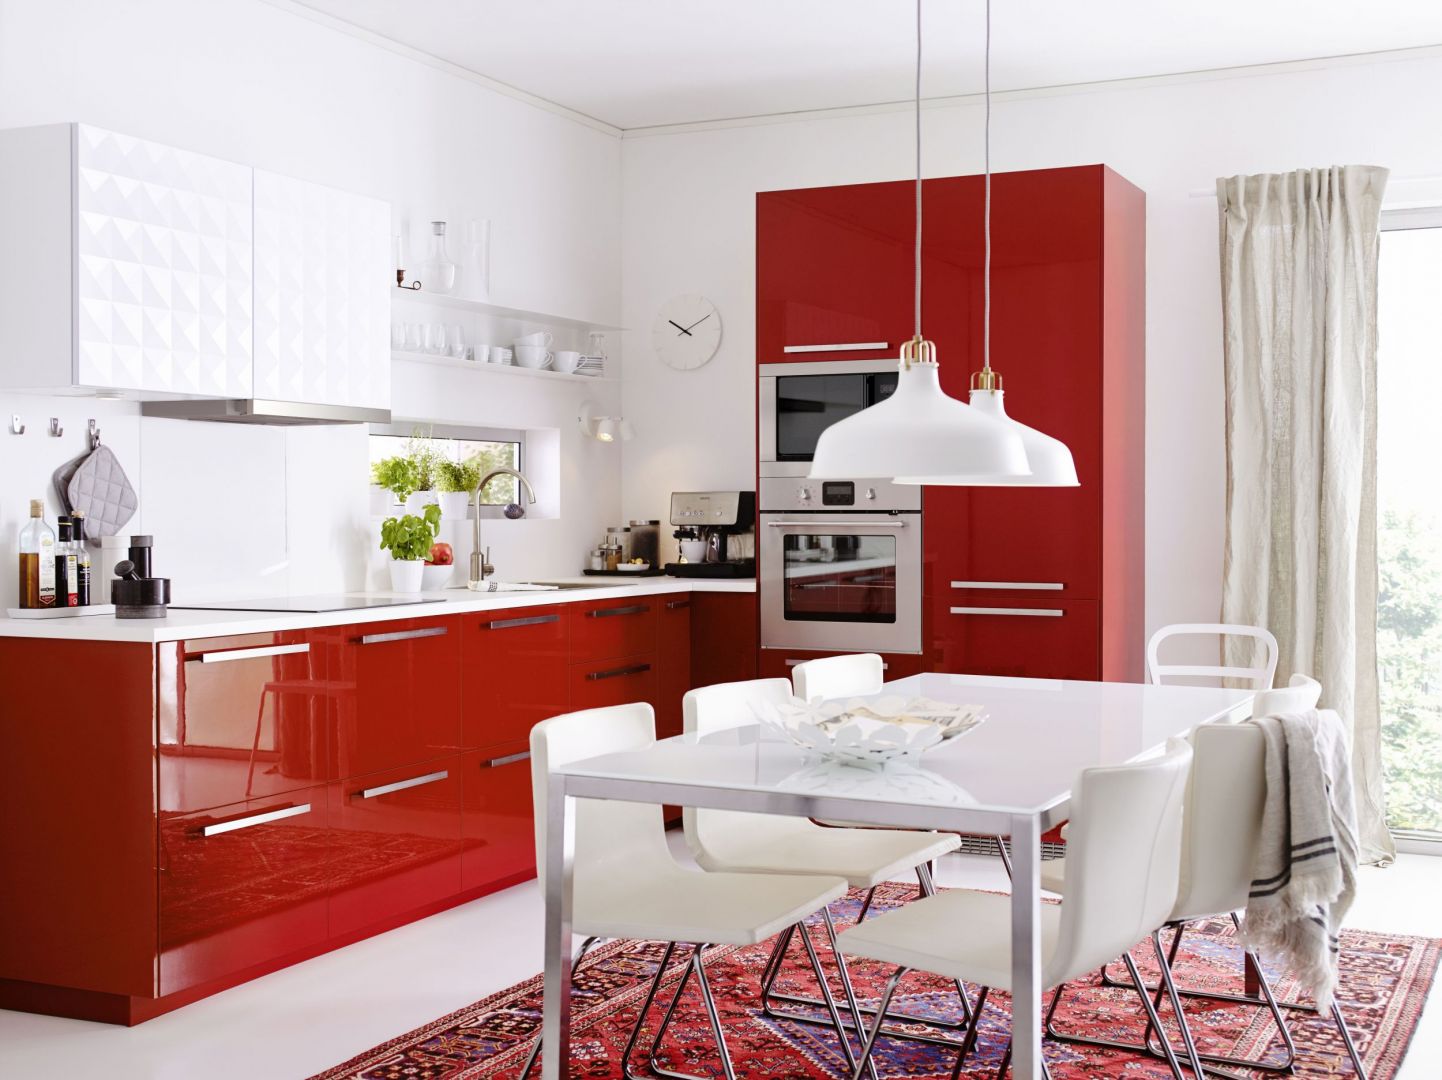 Czerwona kuchnia, która ożywia wnętrze. Meble marki Ikea
Fot. Ikea